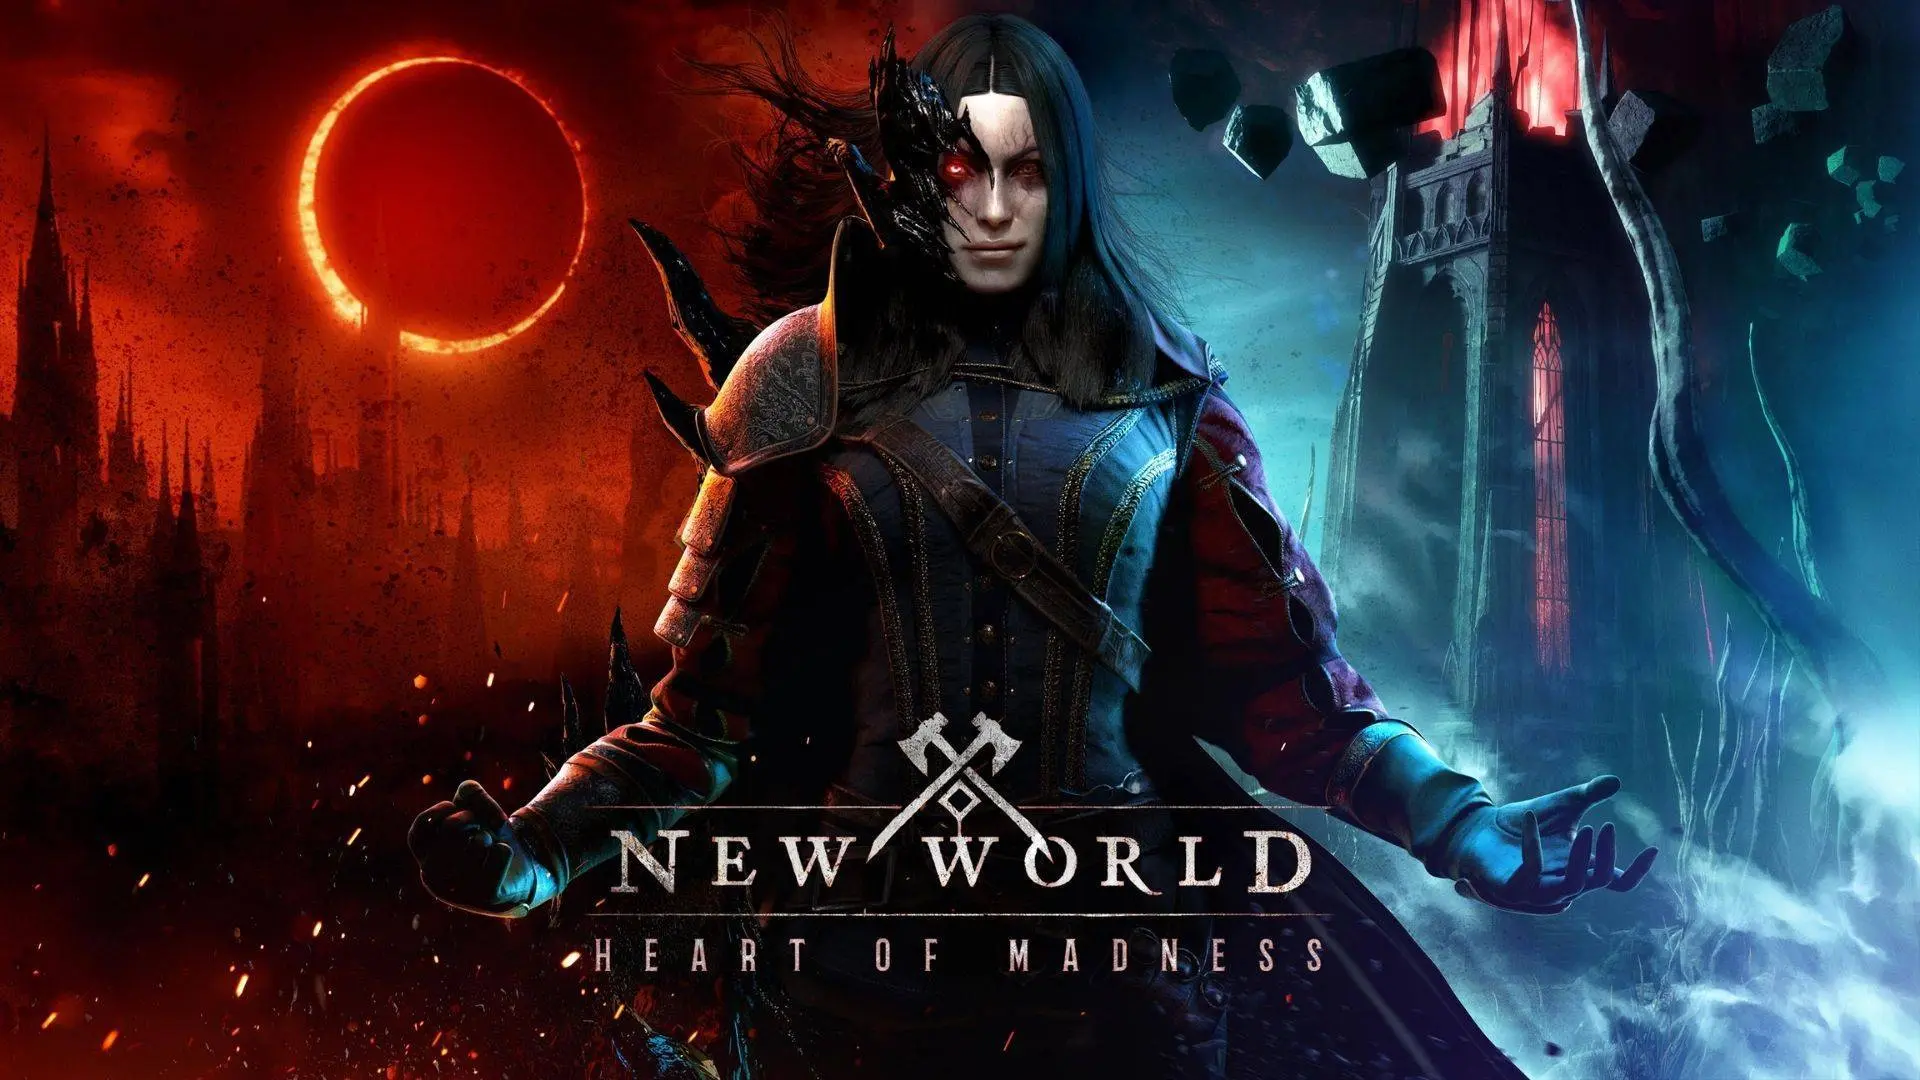 New World's Heart of Madness Update startet am 30. März